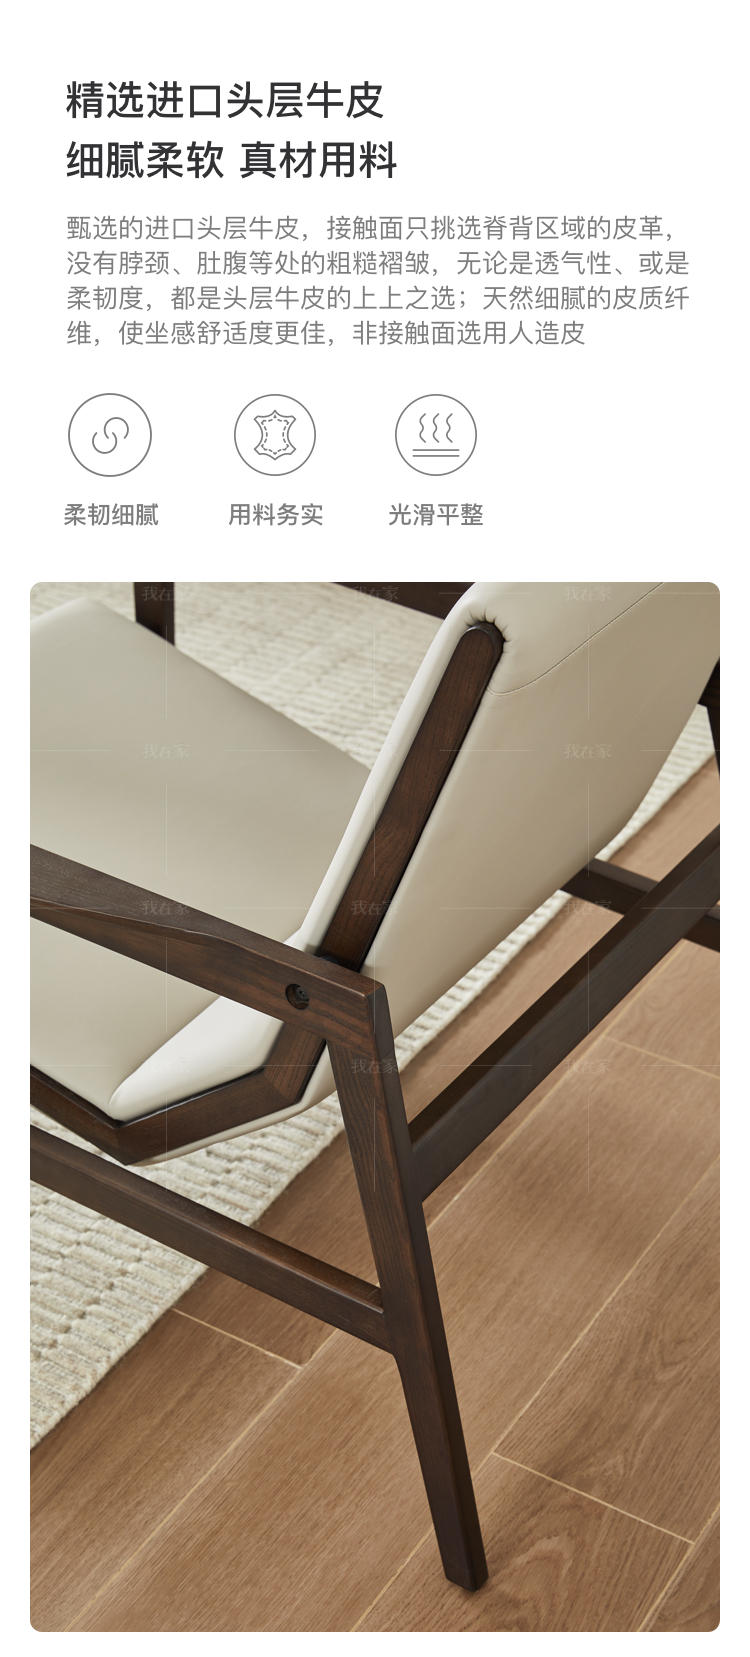 意式极简风格洛希休闲椅的家具详细介绍